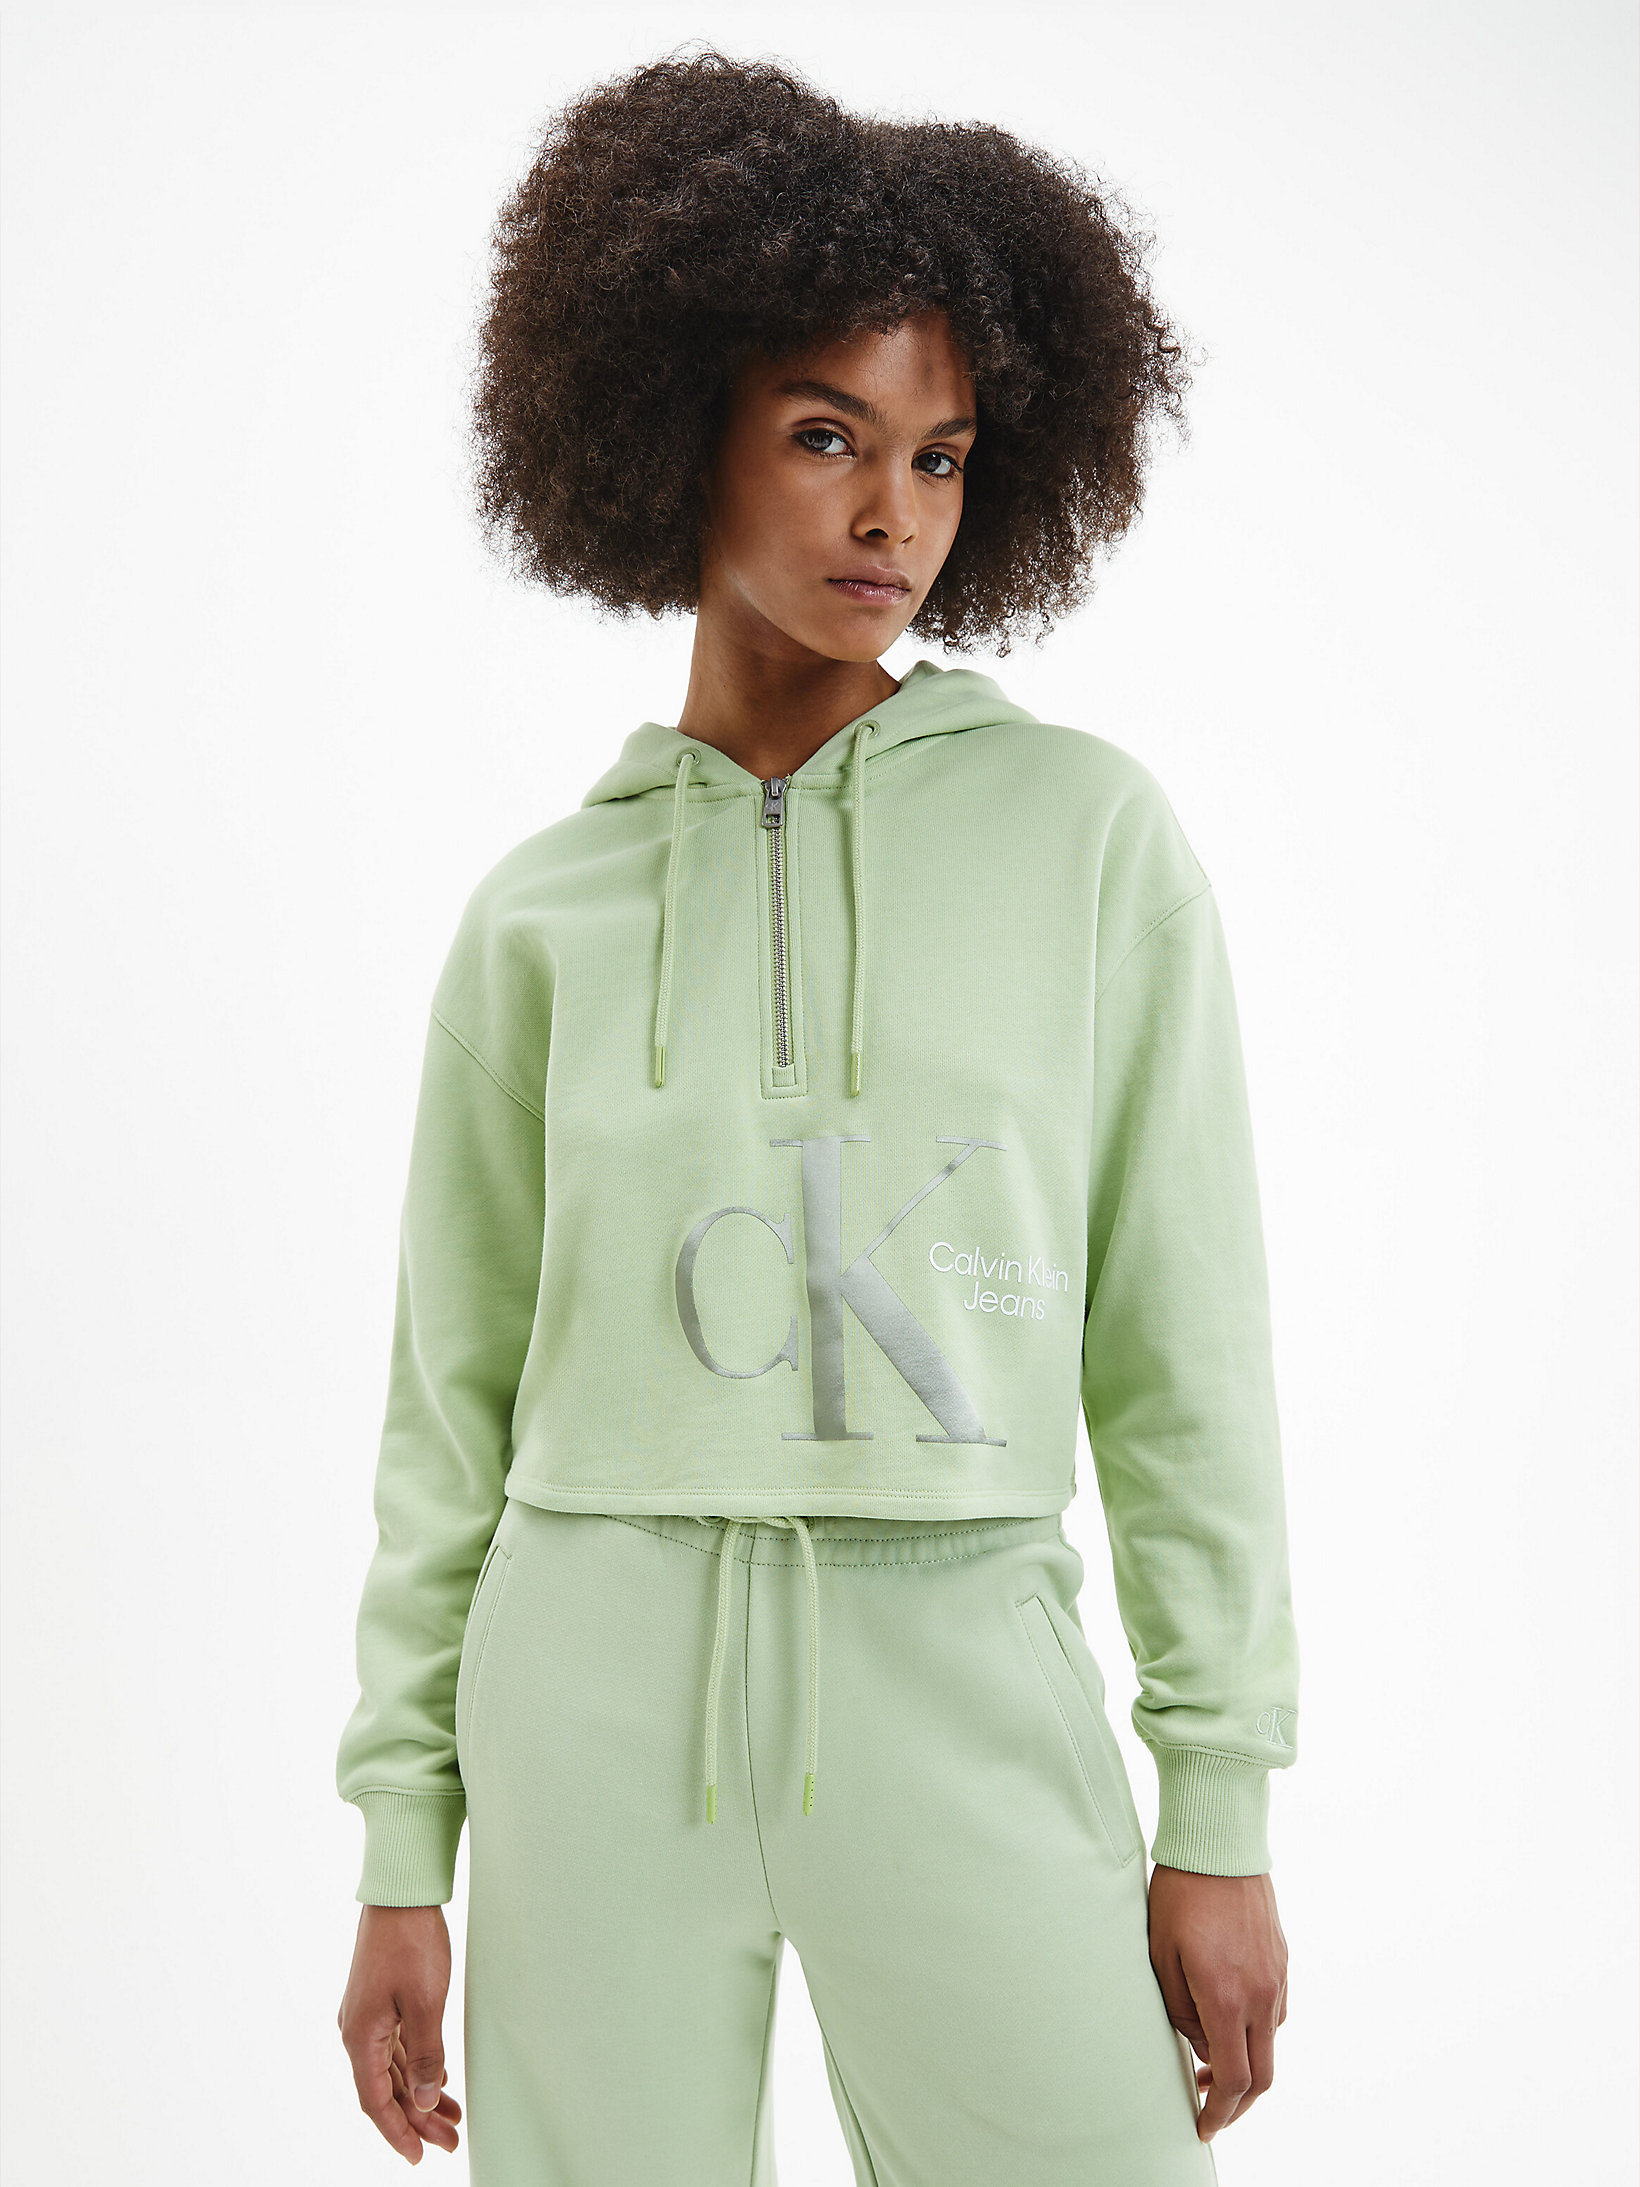 Jaded Green > Lässiger Hoodie Mit Kragenreißverschluss > undefined Damen - Calvin Klein